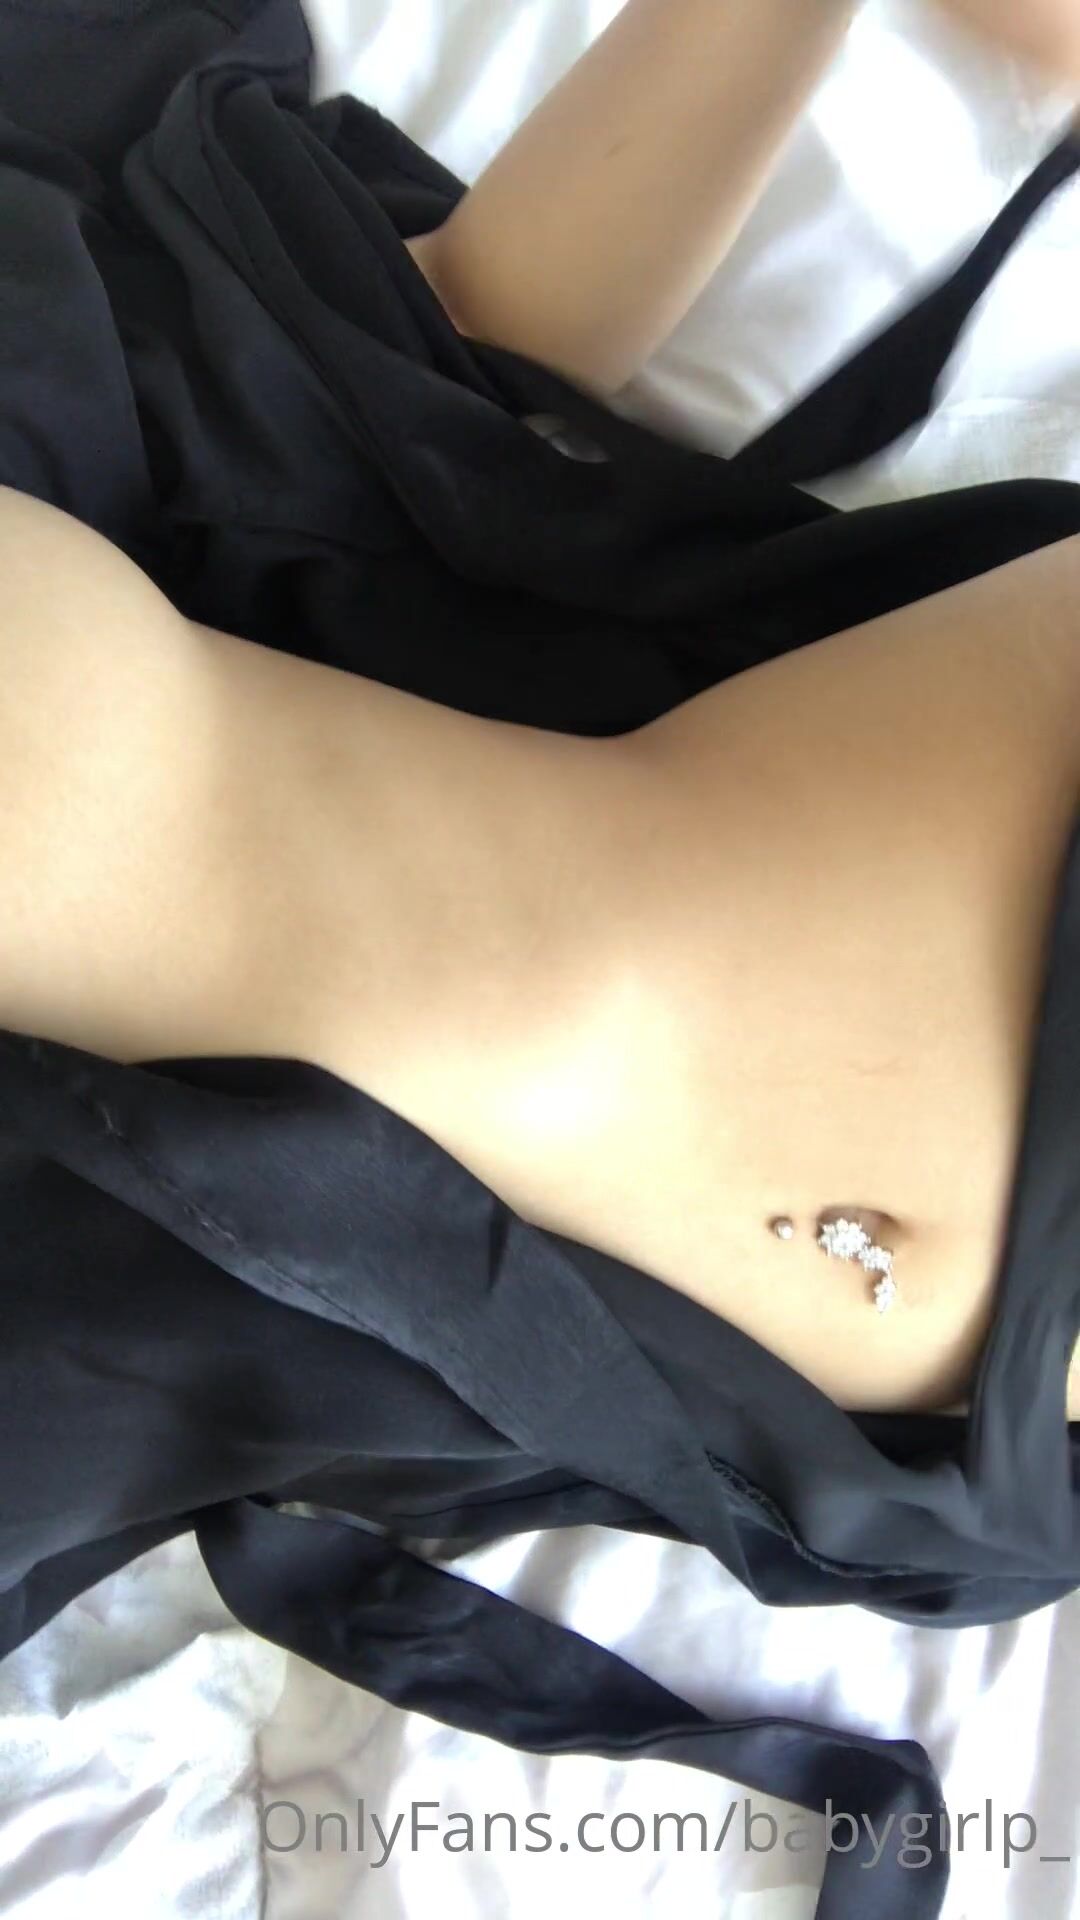 Priya ares nude boobs full views video